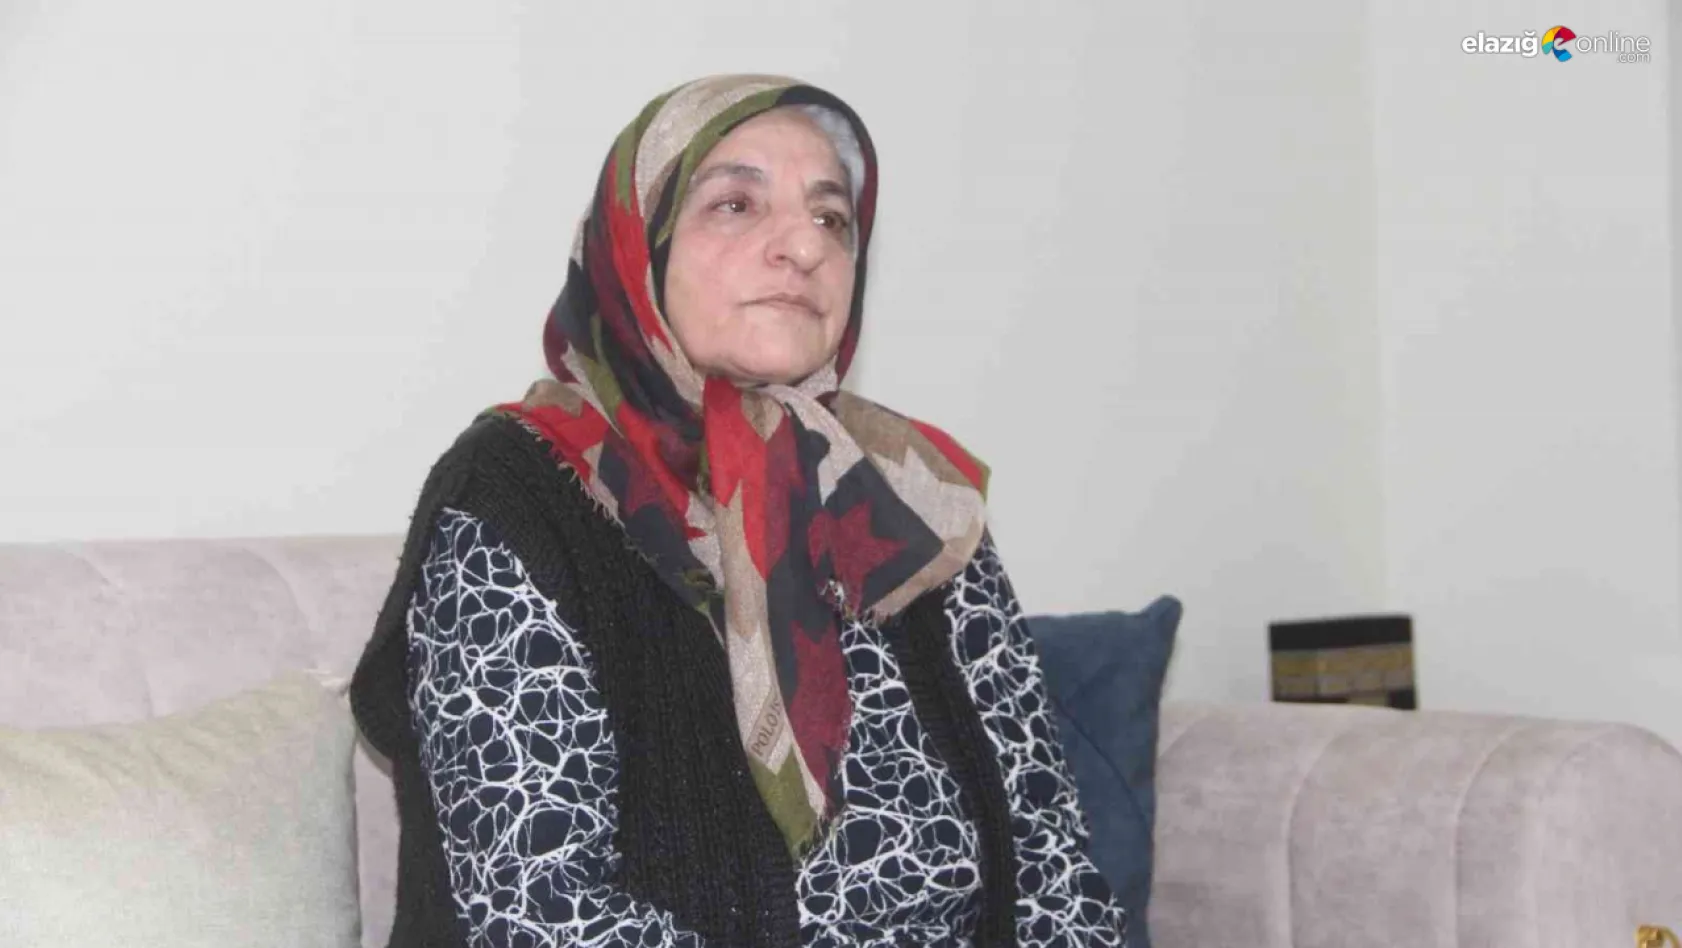 Elazığ depreminde kızını kaybeden acılı anne: 'Sanki kızımı yeni gömdüm'